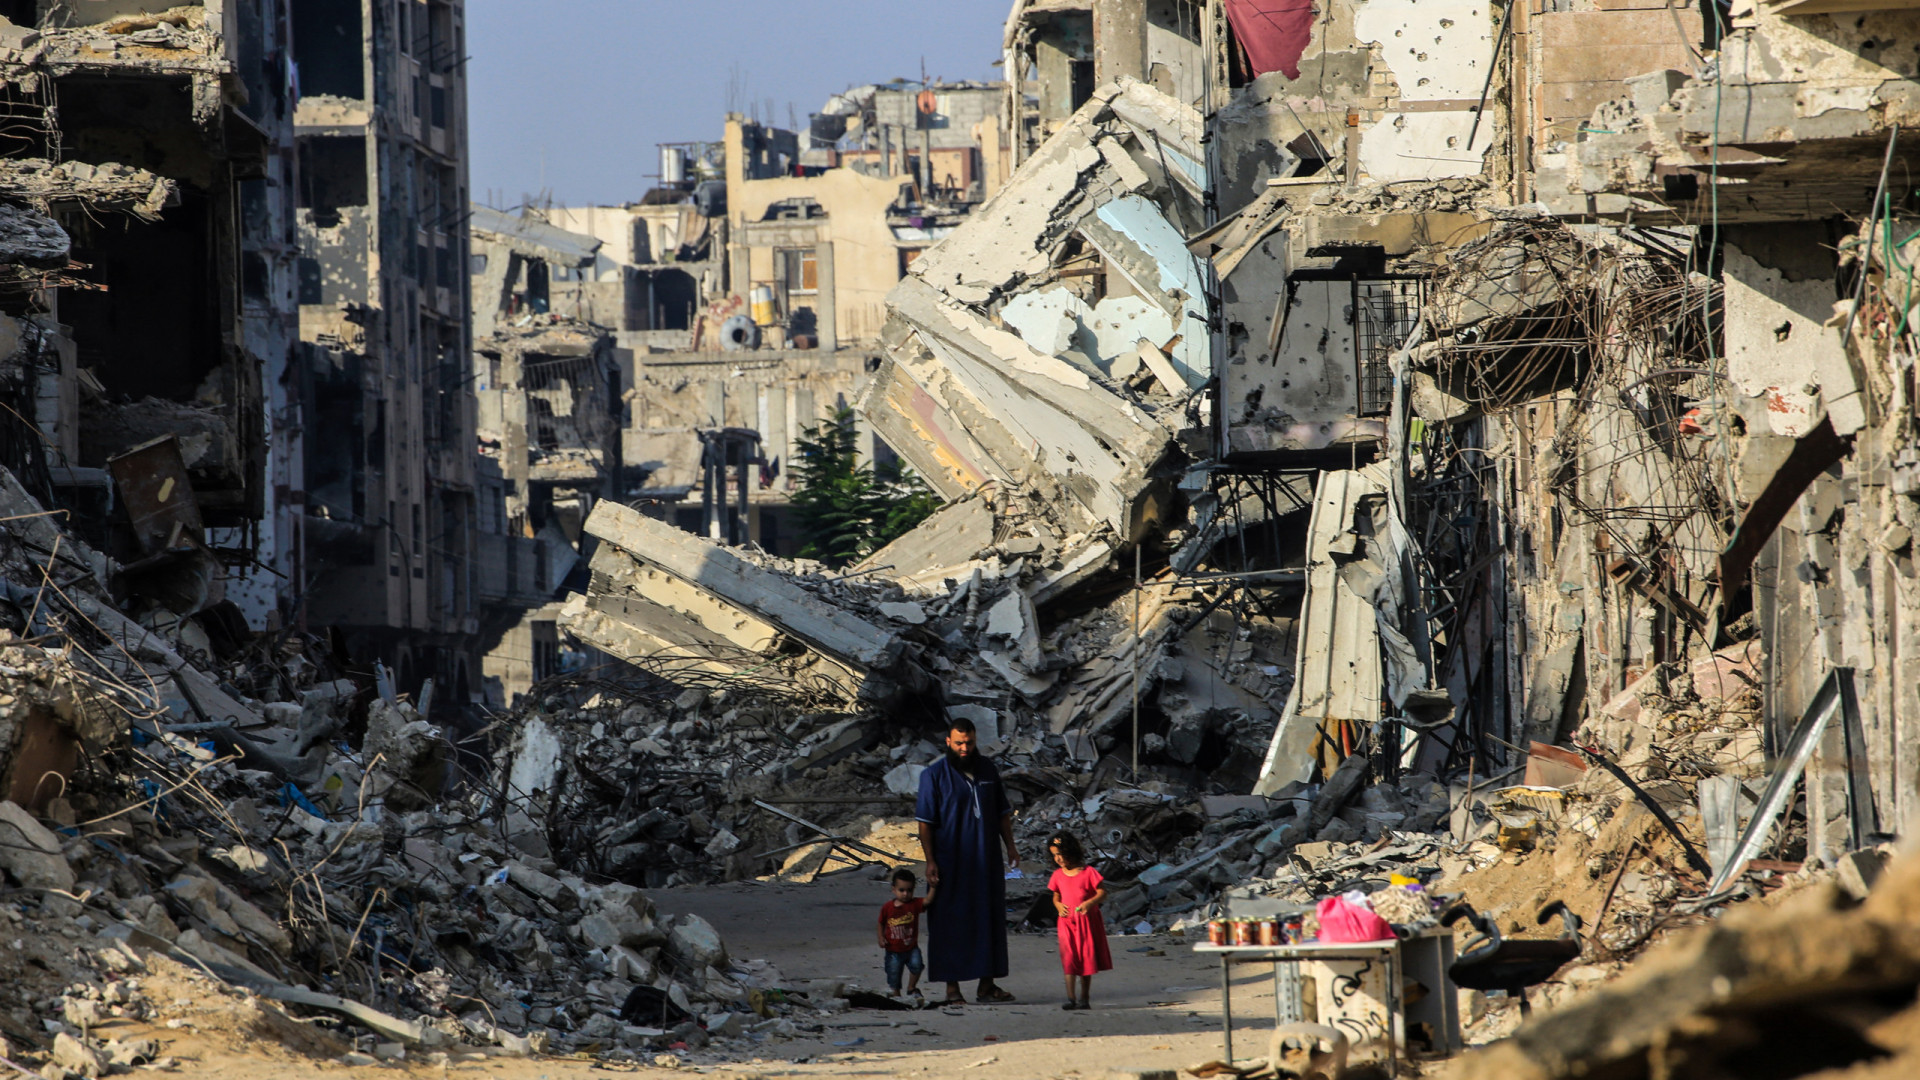 ONU estima que 80% da população de Gaza esteja deslocada